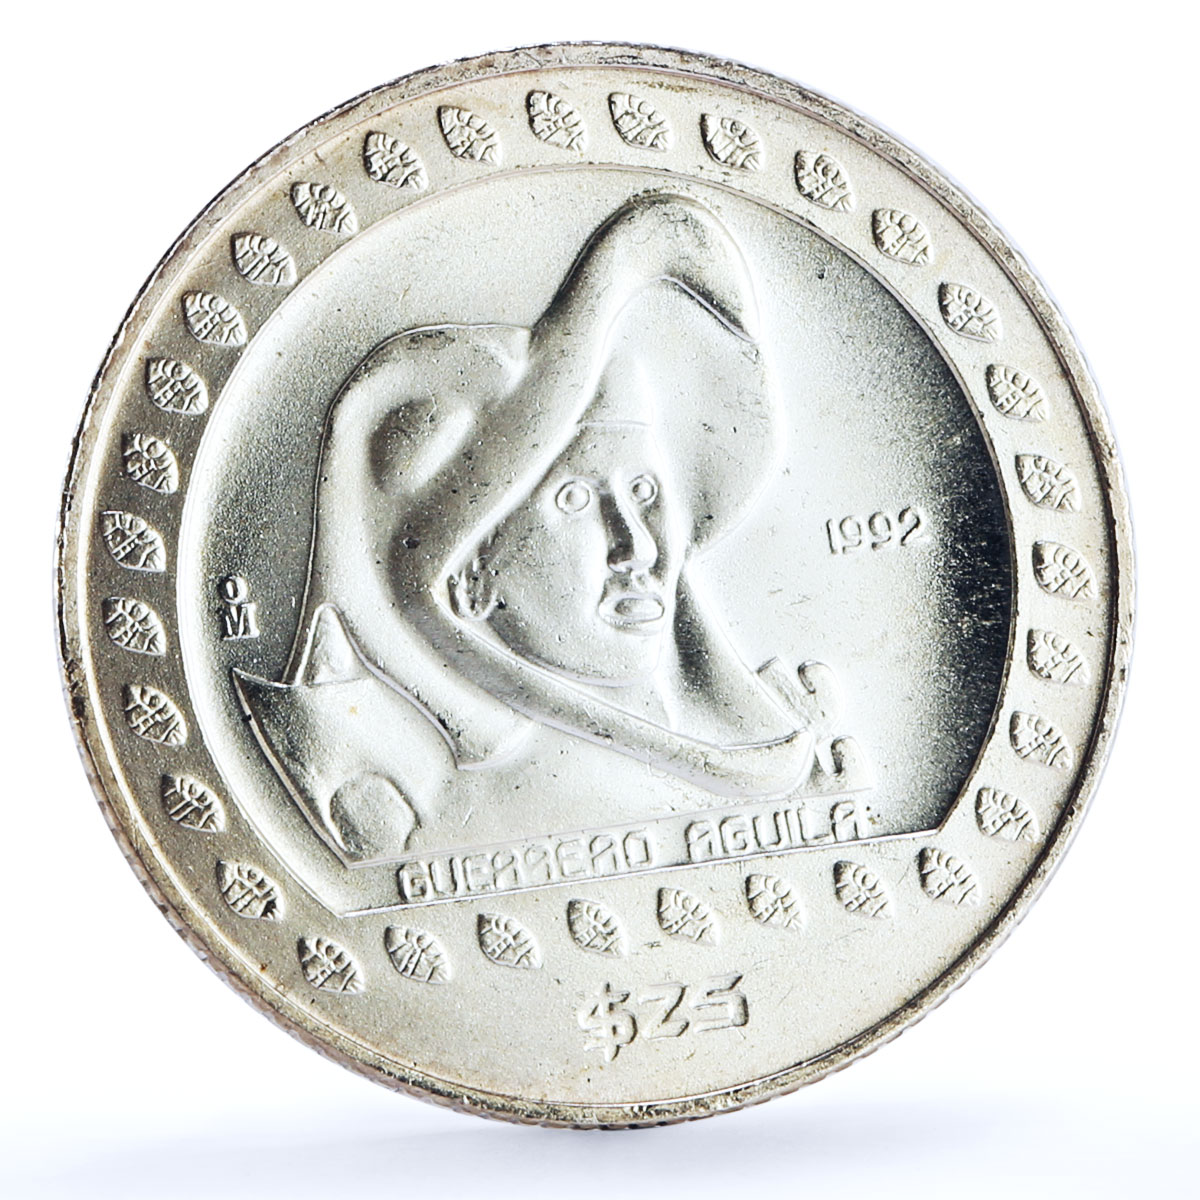 Mexico set of 3 coins Precolombina Guerrero Aguila Eagle Warrior Ag coins 1992